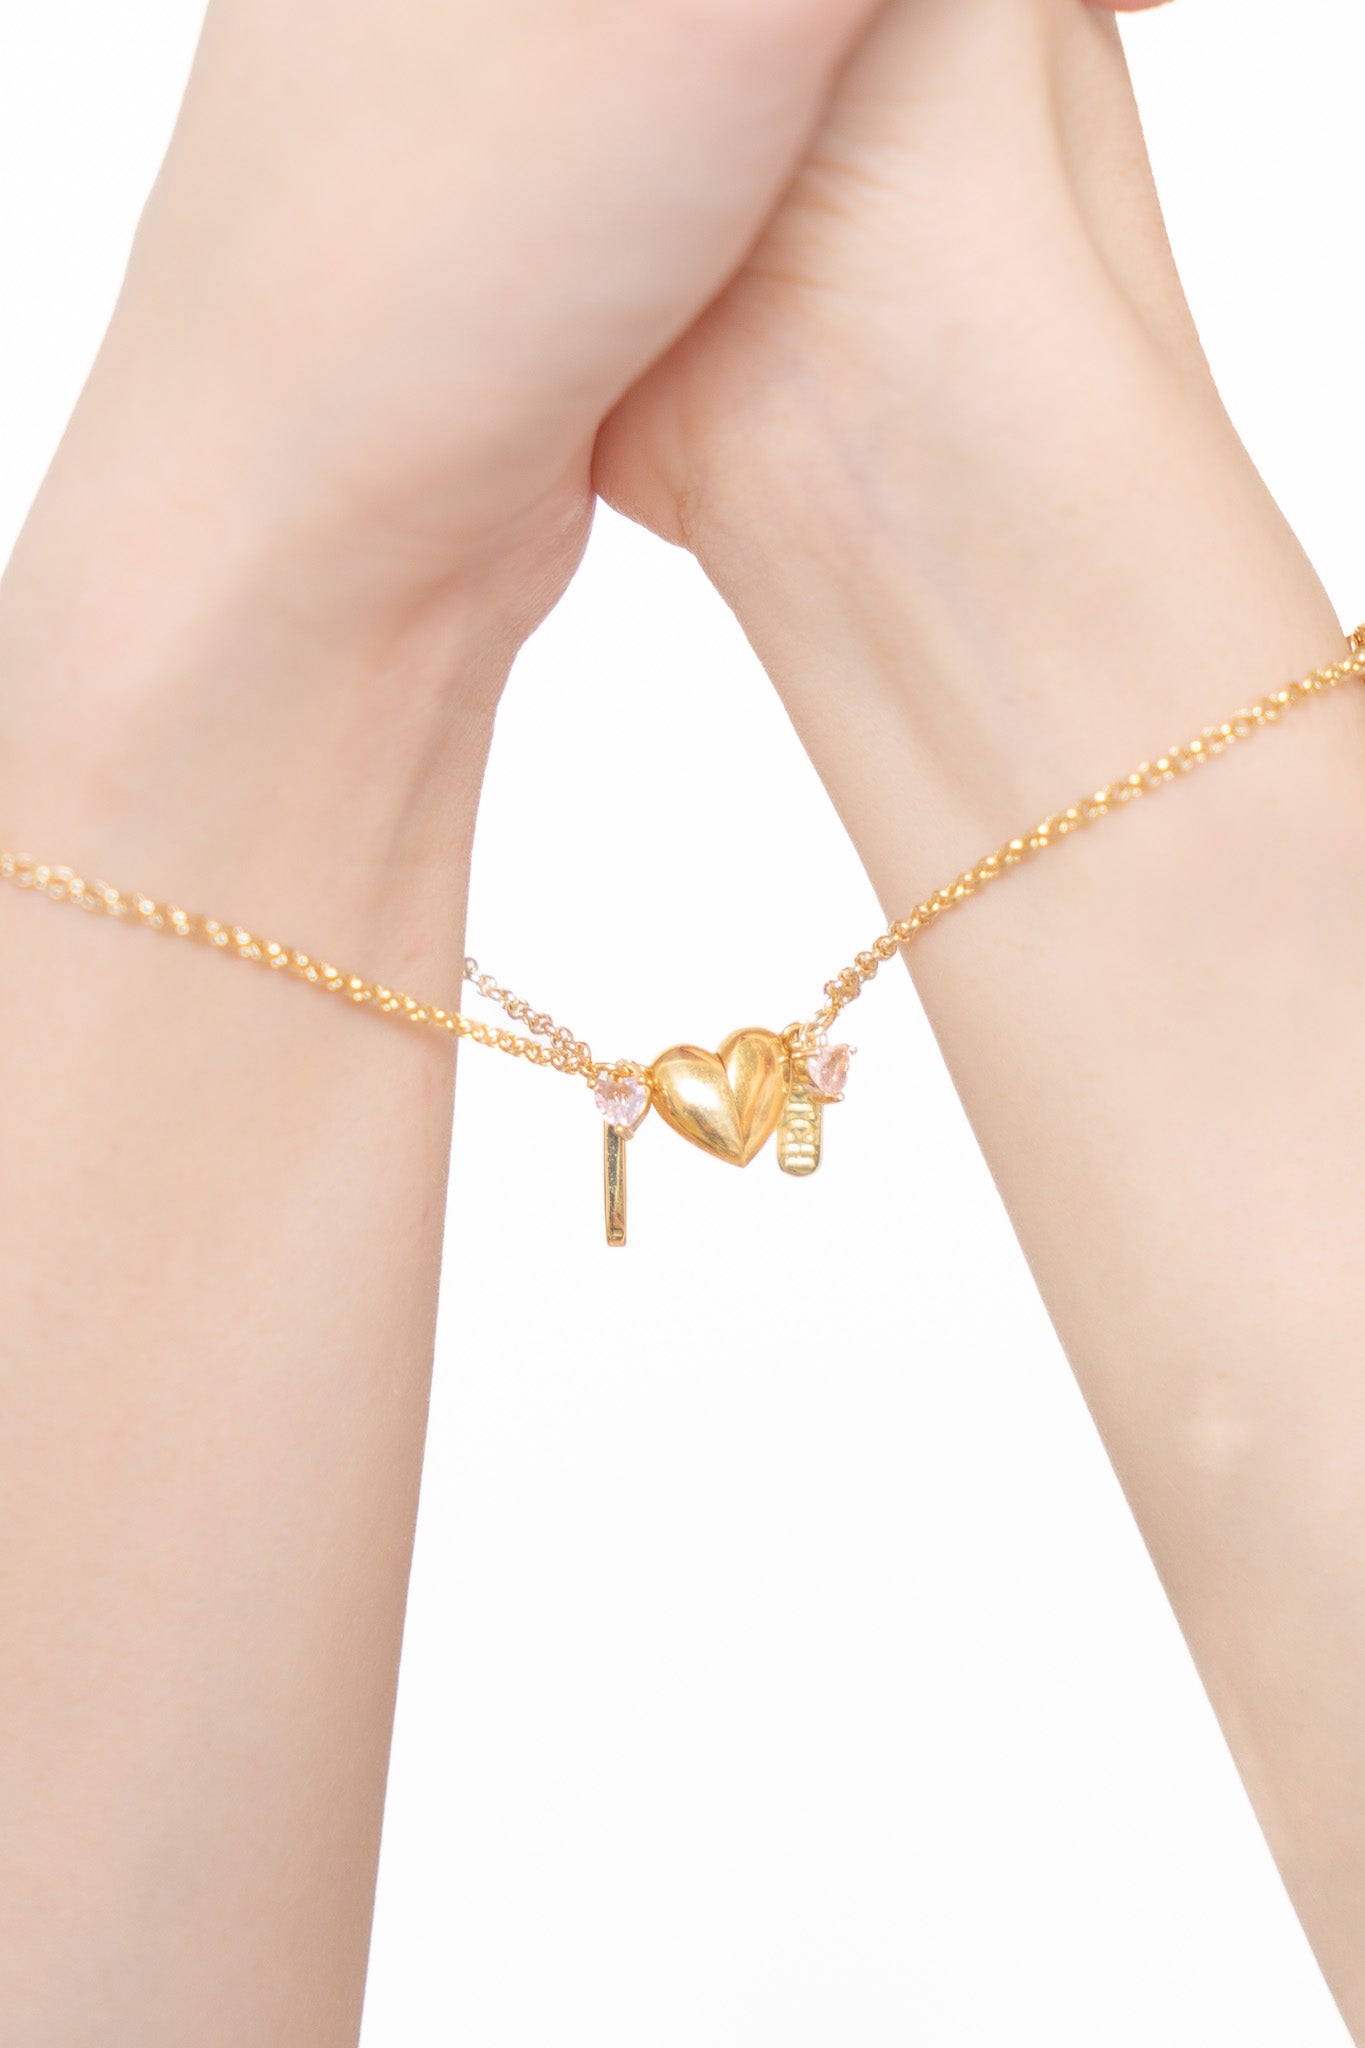 Amazon.com: YANCHUN 2pcs Couple Bracelets Set Sliver Chain Bracelet Peach Heart  Bracelet Promise Couples Bracelets for Boyfriend Girlfriend Gifts (Black  and White): Clothing, Shoes & Jewelry